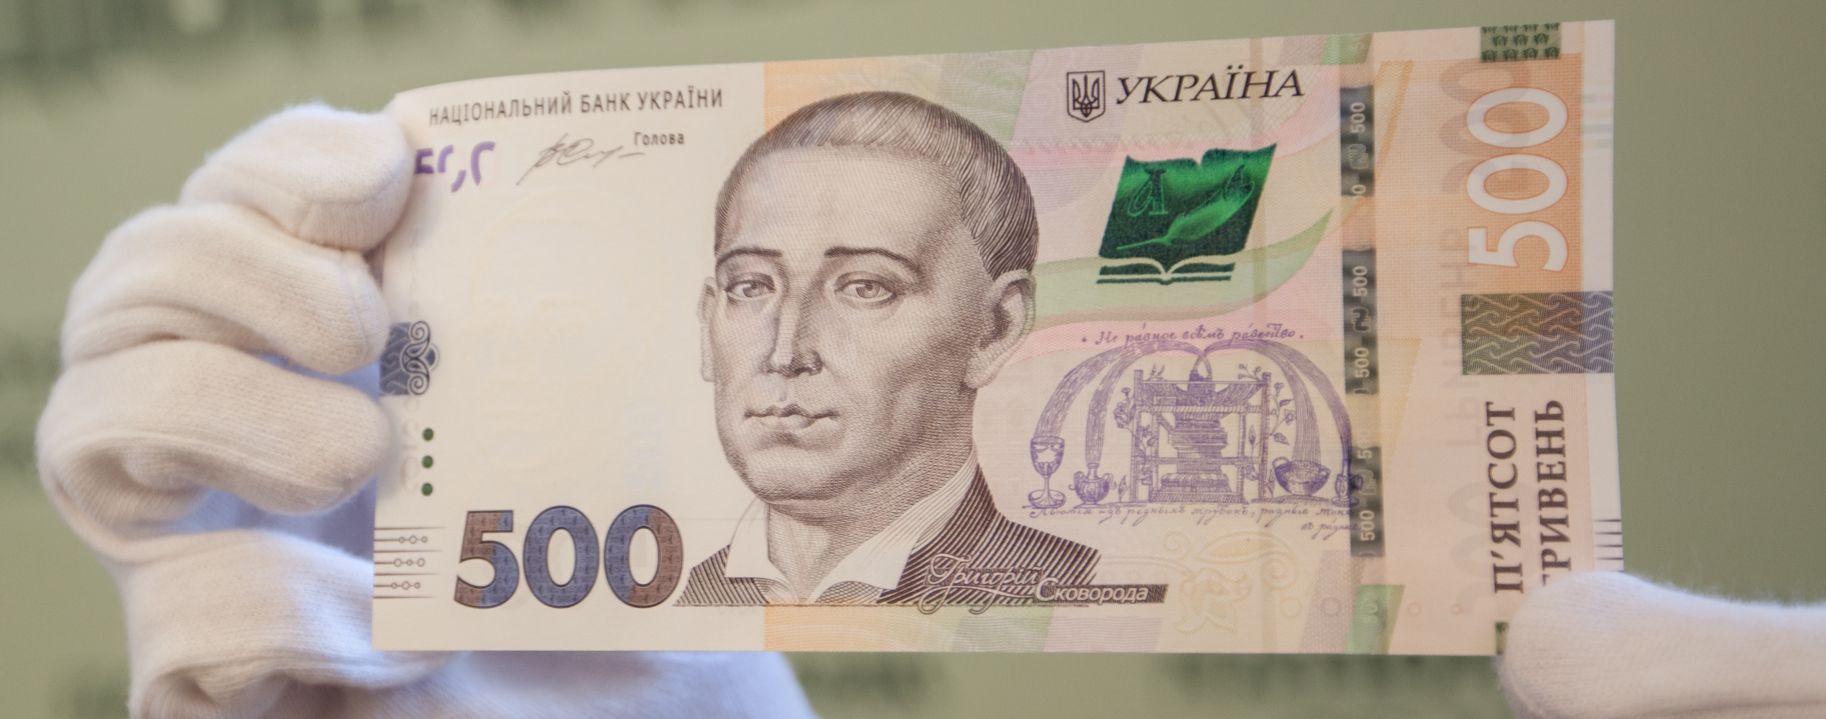 Ukraina wprowadziła do obiegu zmodernizowany banknot o nominale 500 hrywien